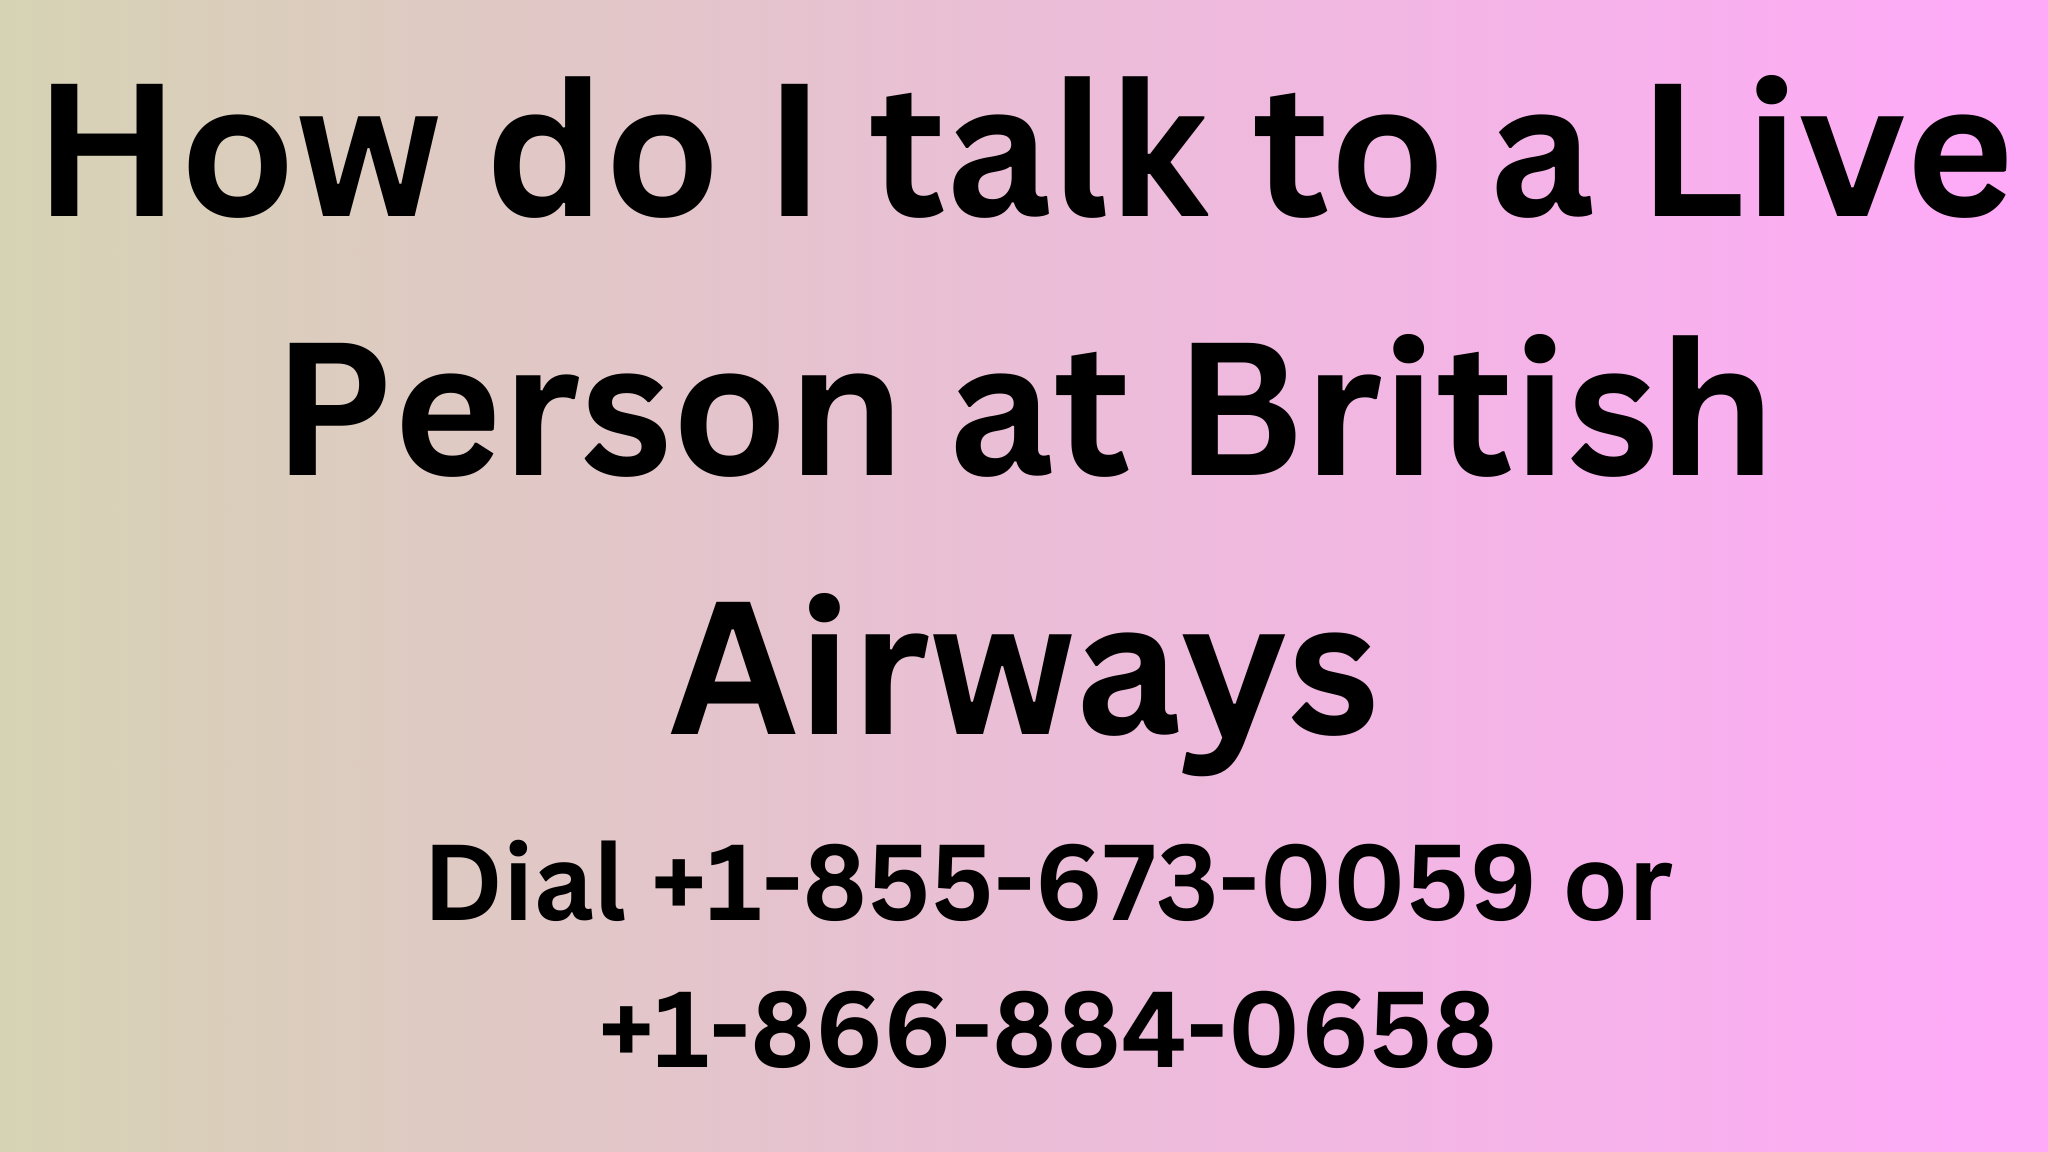 British Airways.png